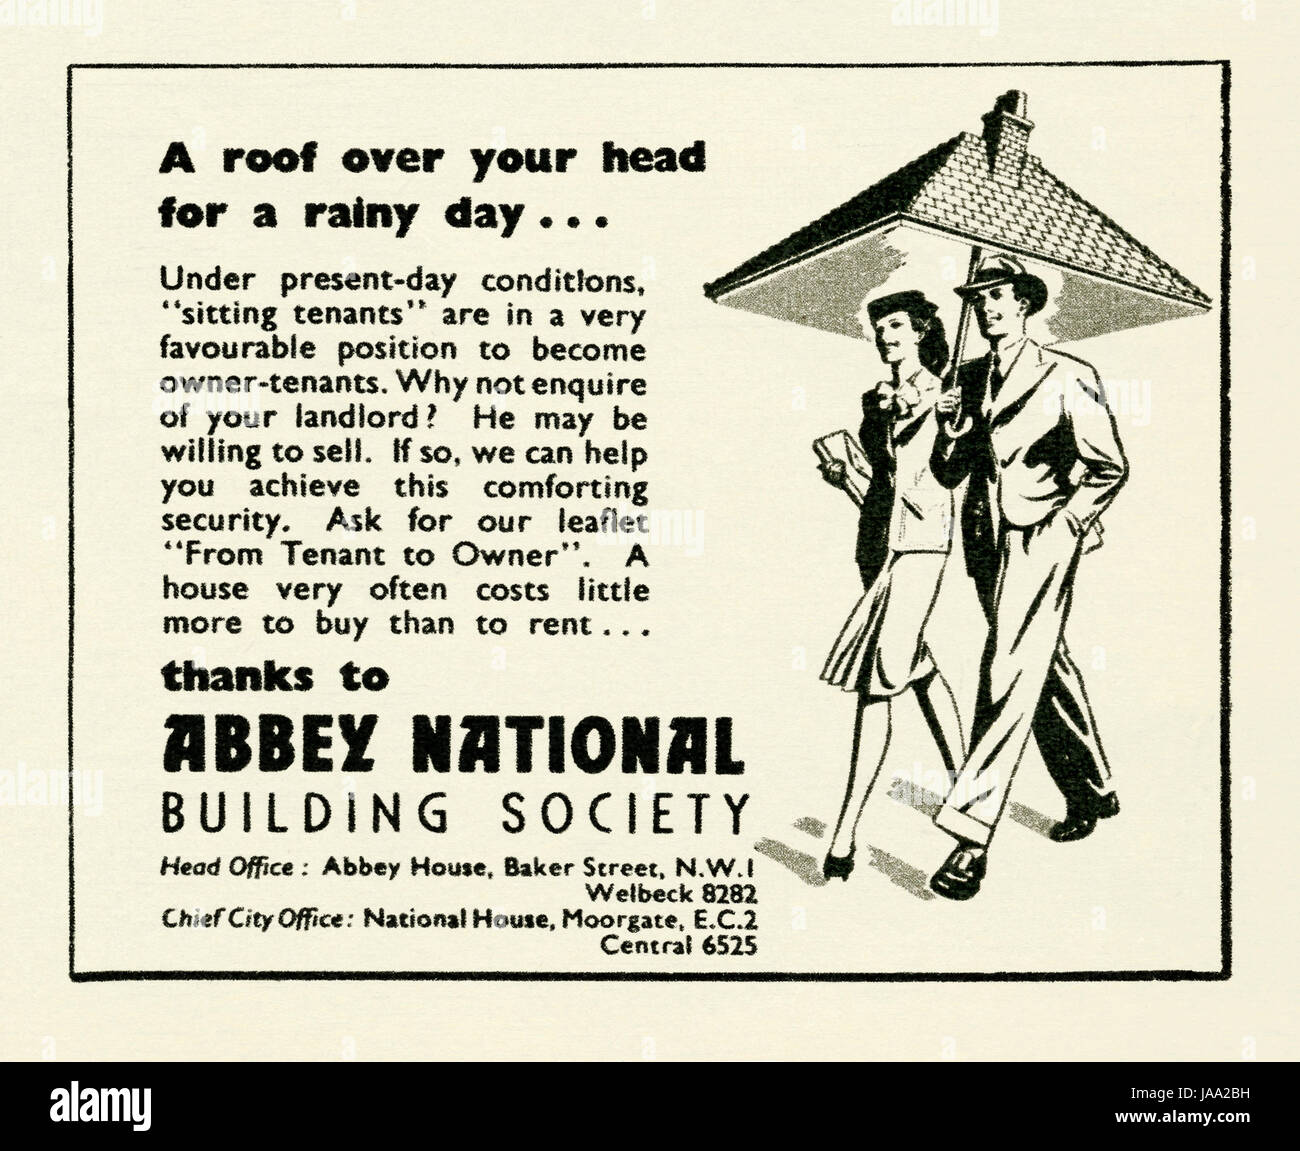 Dans une publicité pour l'Abbey National Building Society - il est apparu dans un magazine publié au Royaume-Uni en 1947 Banque D'Images